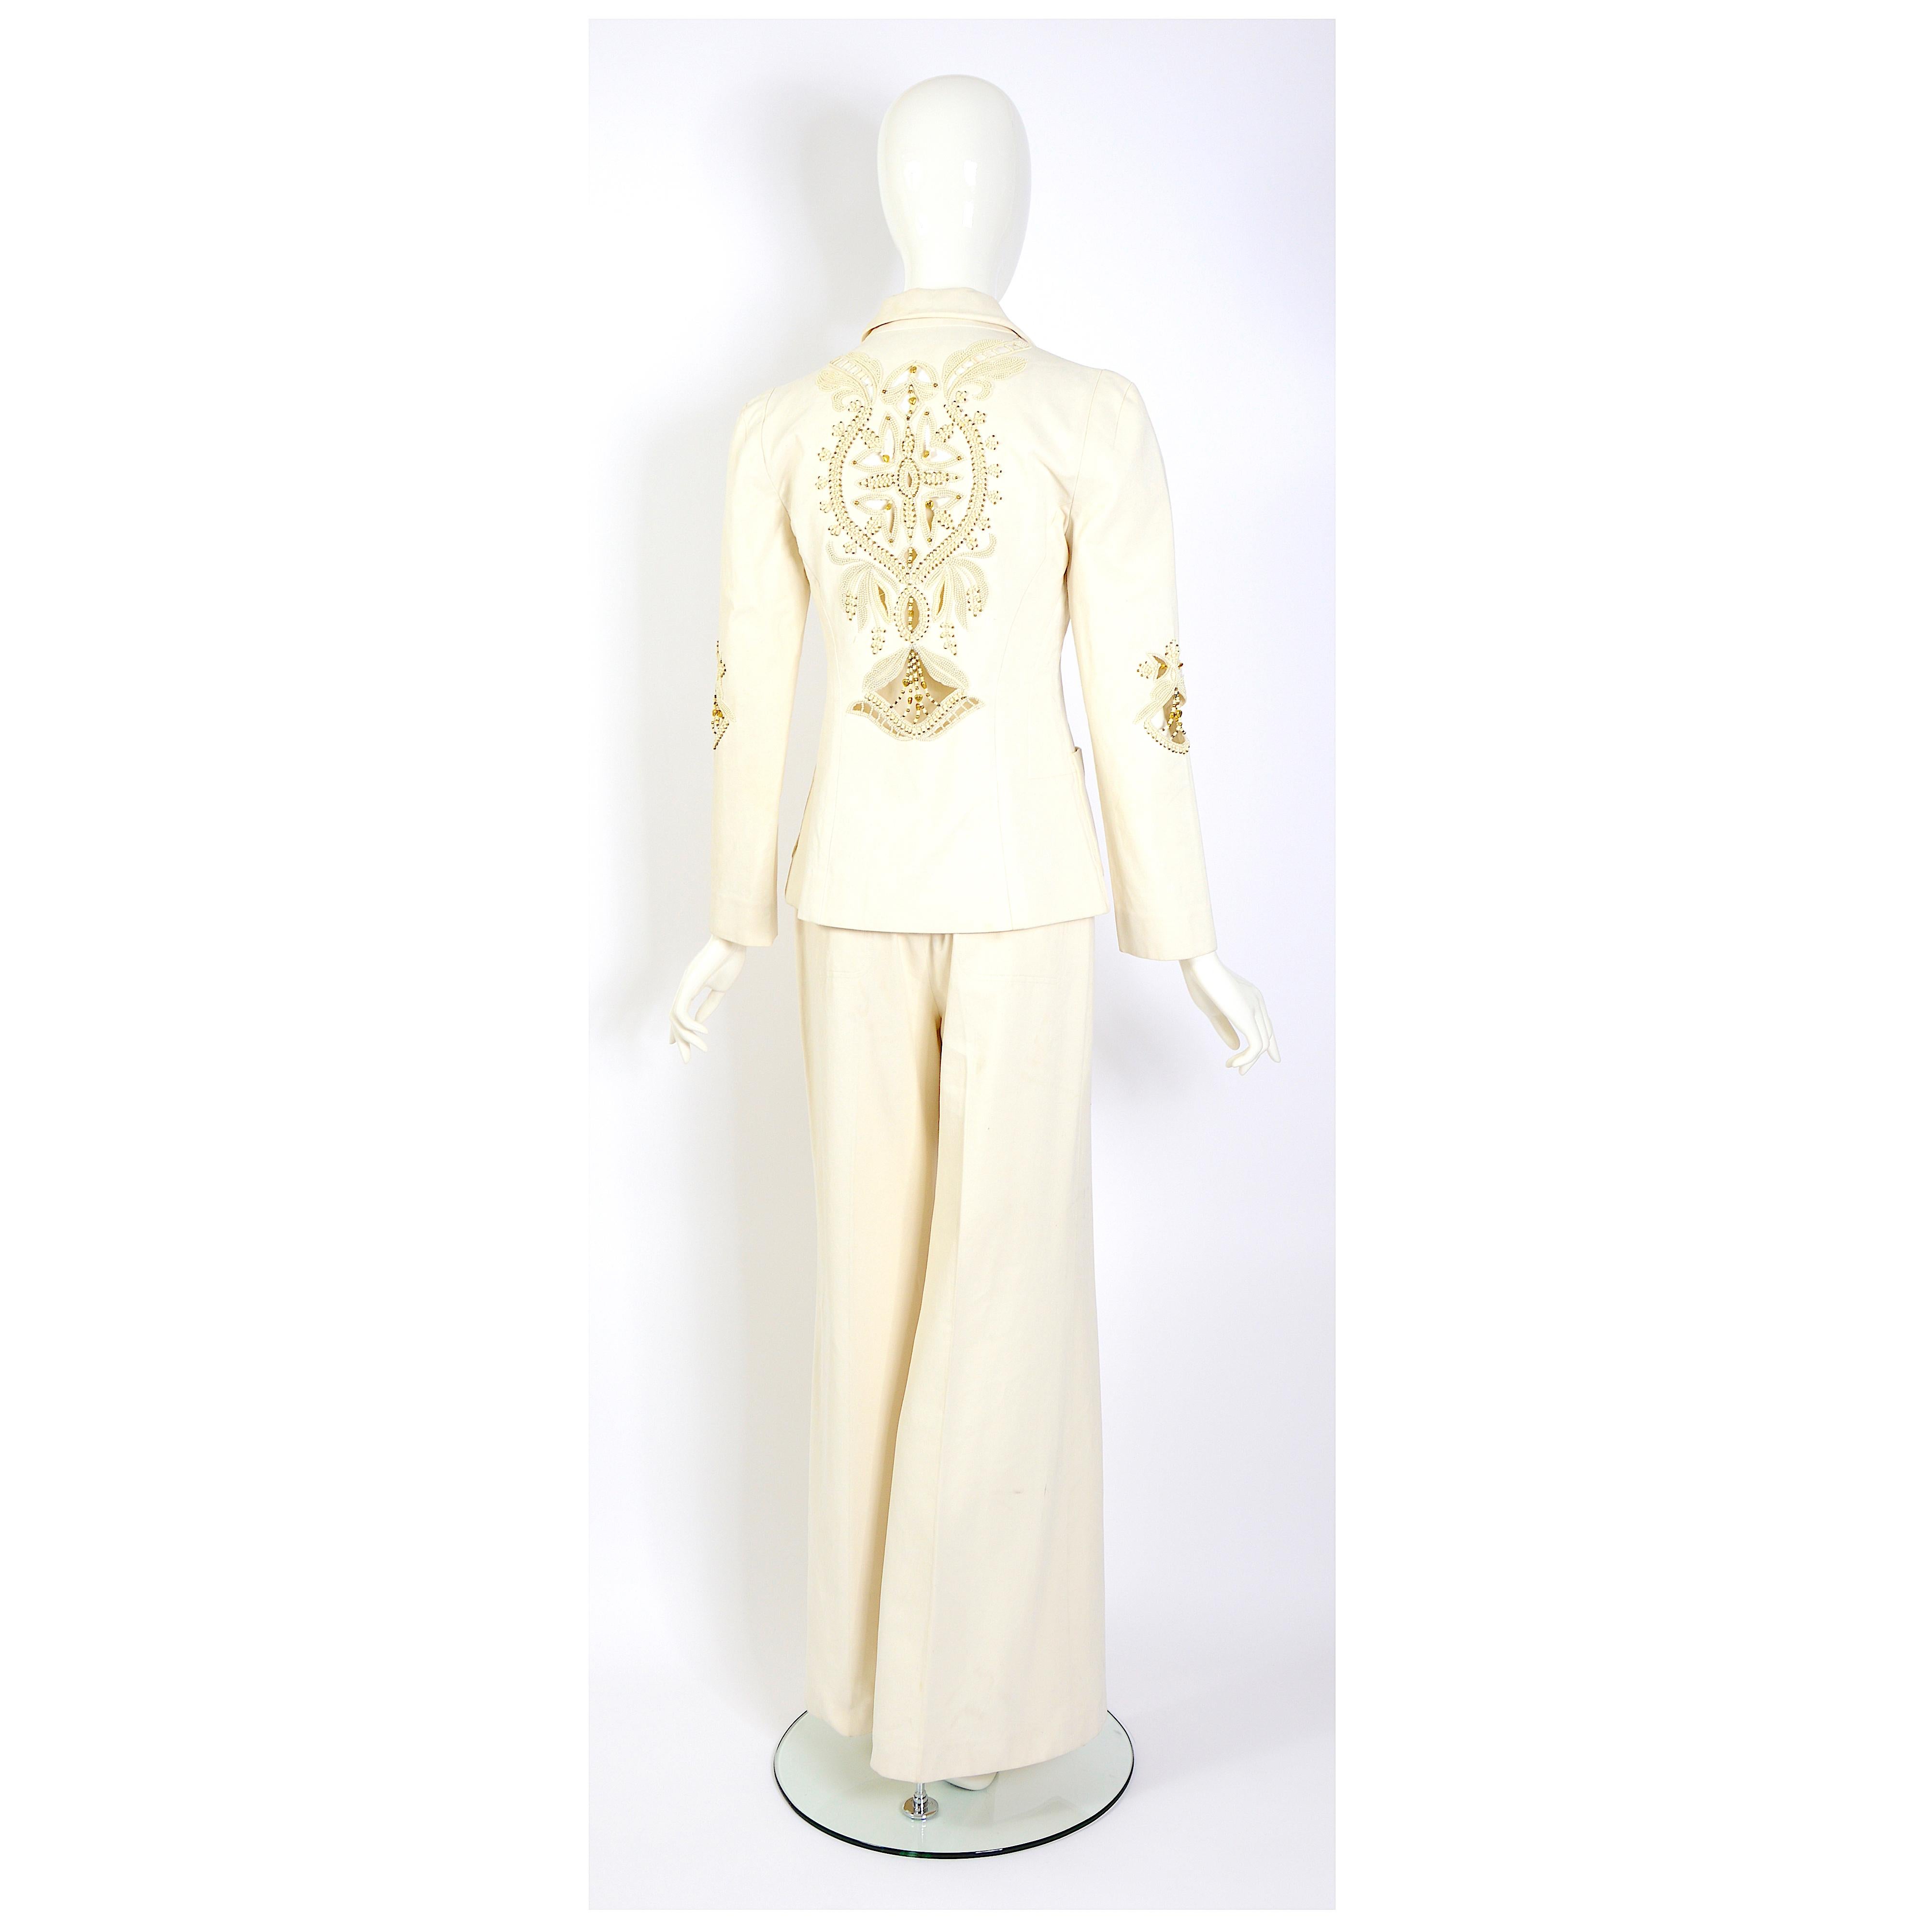 Zeitlose Eleganz mit diesem umwerfenden Vintage-Kostüm von Chloé by Phoebe Philo aus dem Frühjahr/Sommer 2002. Der schicke cremefarbene Anzug ist am Rücken und an den Ärmeln mit edlen Perlen und charmanten Herzen verziert.
Verpassen Sie nicht die